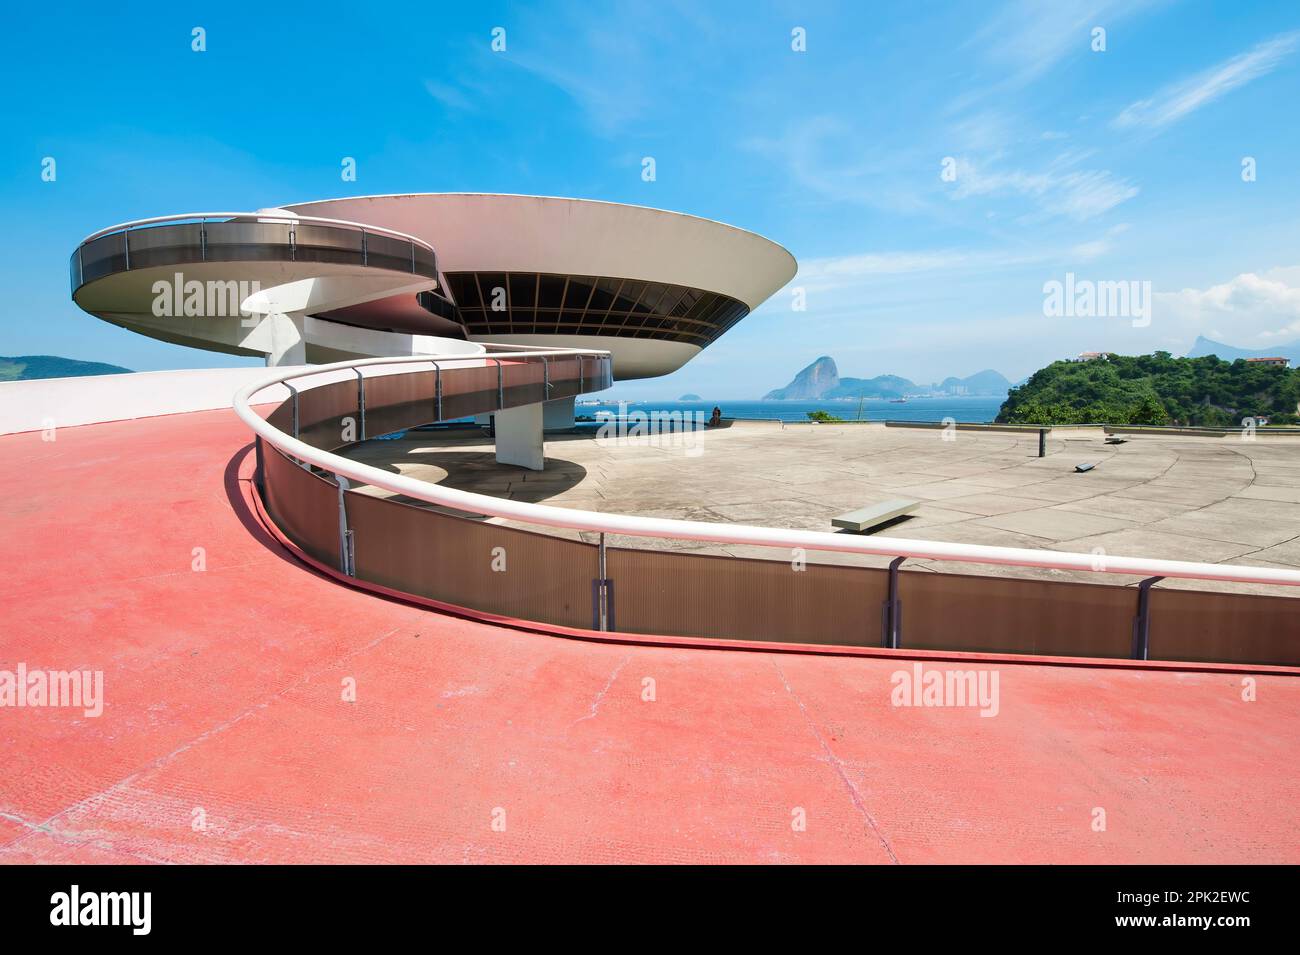 Niemeyer Musée des Arts Contemporains, Niteroi, Rio de Janeiro, Brésil Banque D'Images